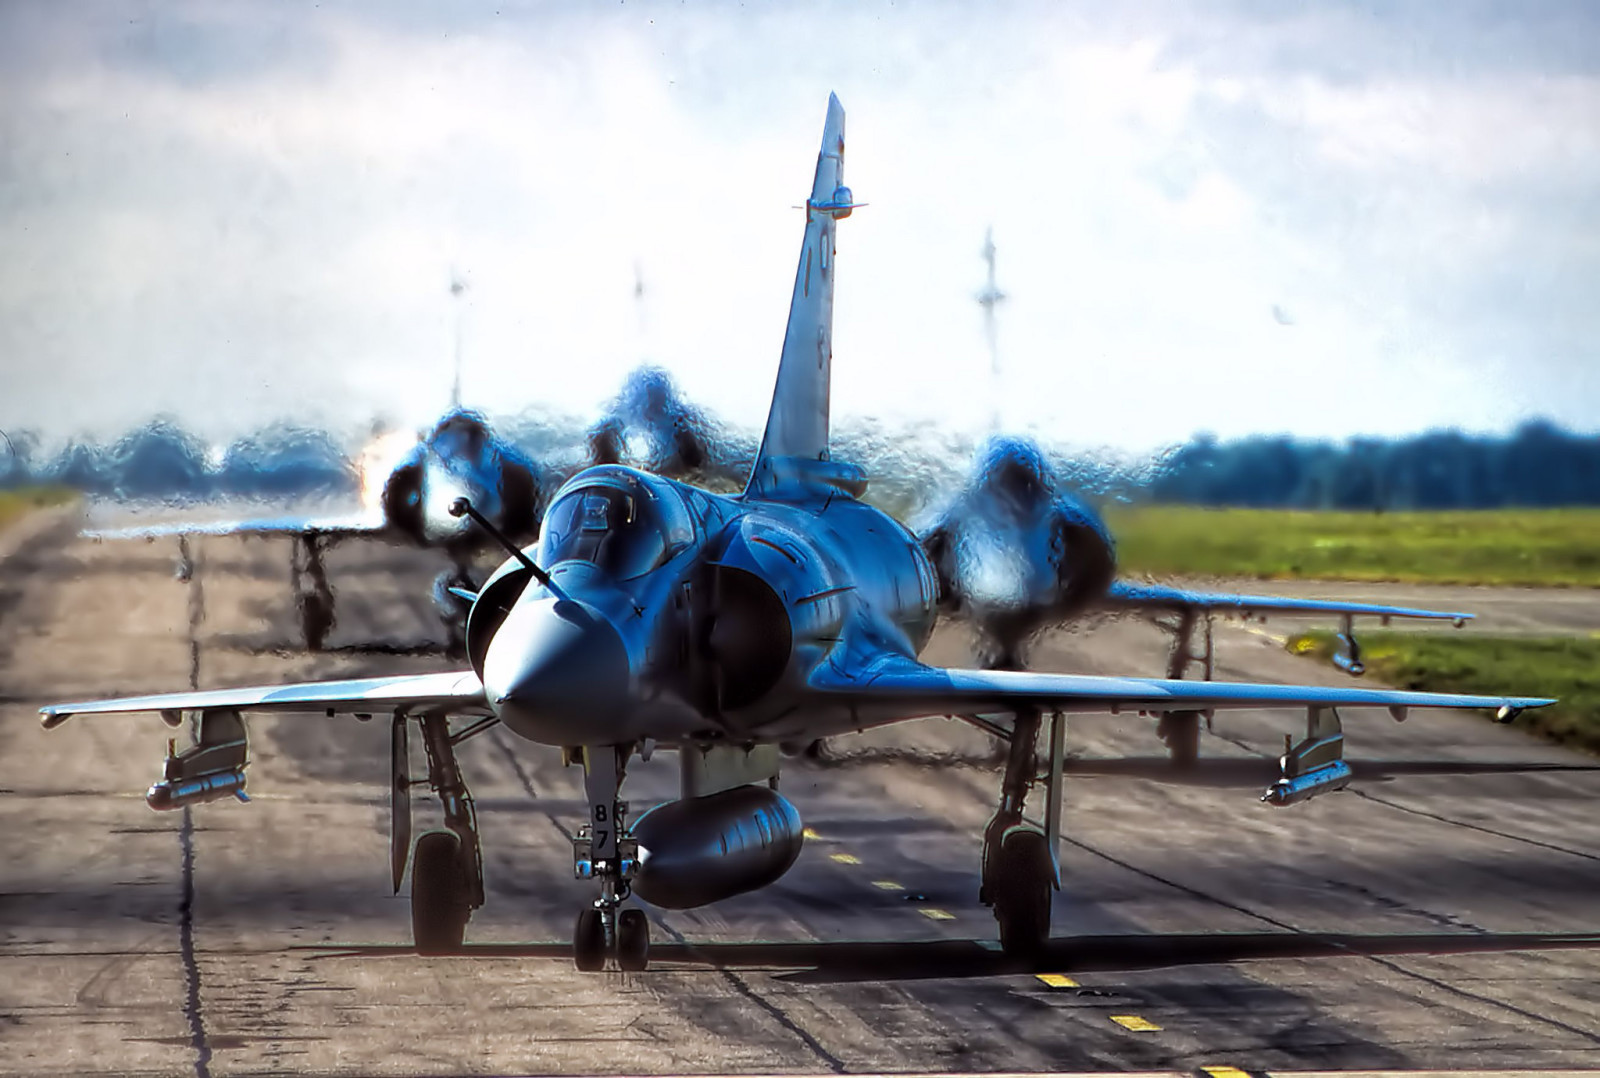 Đấu sĩ, Mirage 2000, sân bay, Đa năng, Dassault